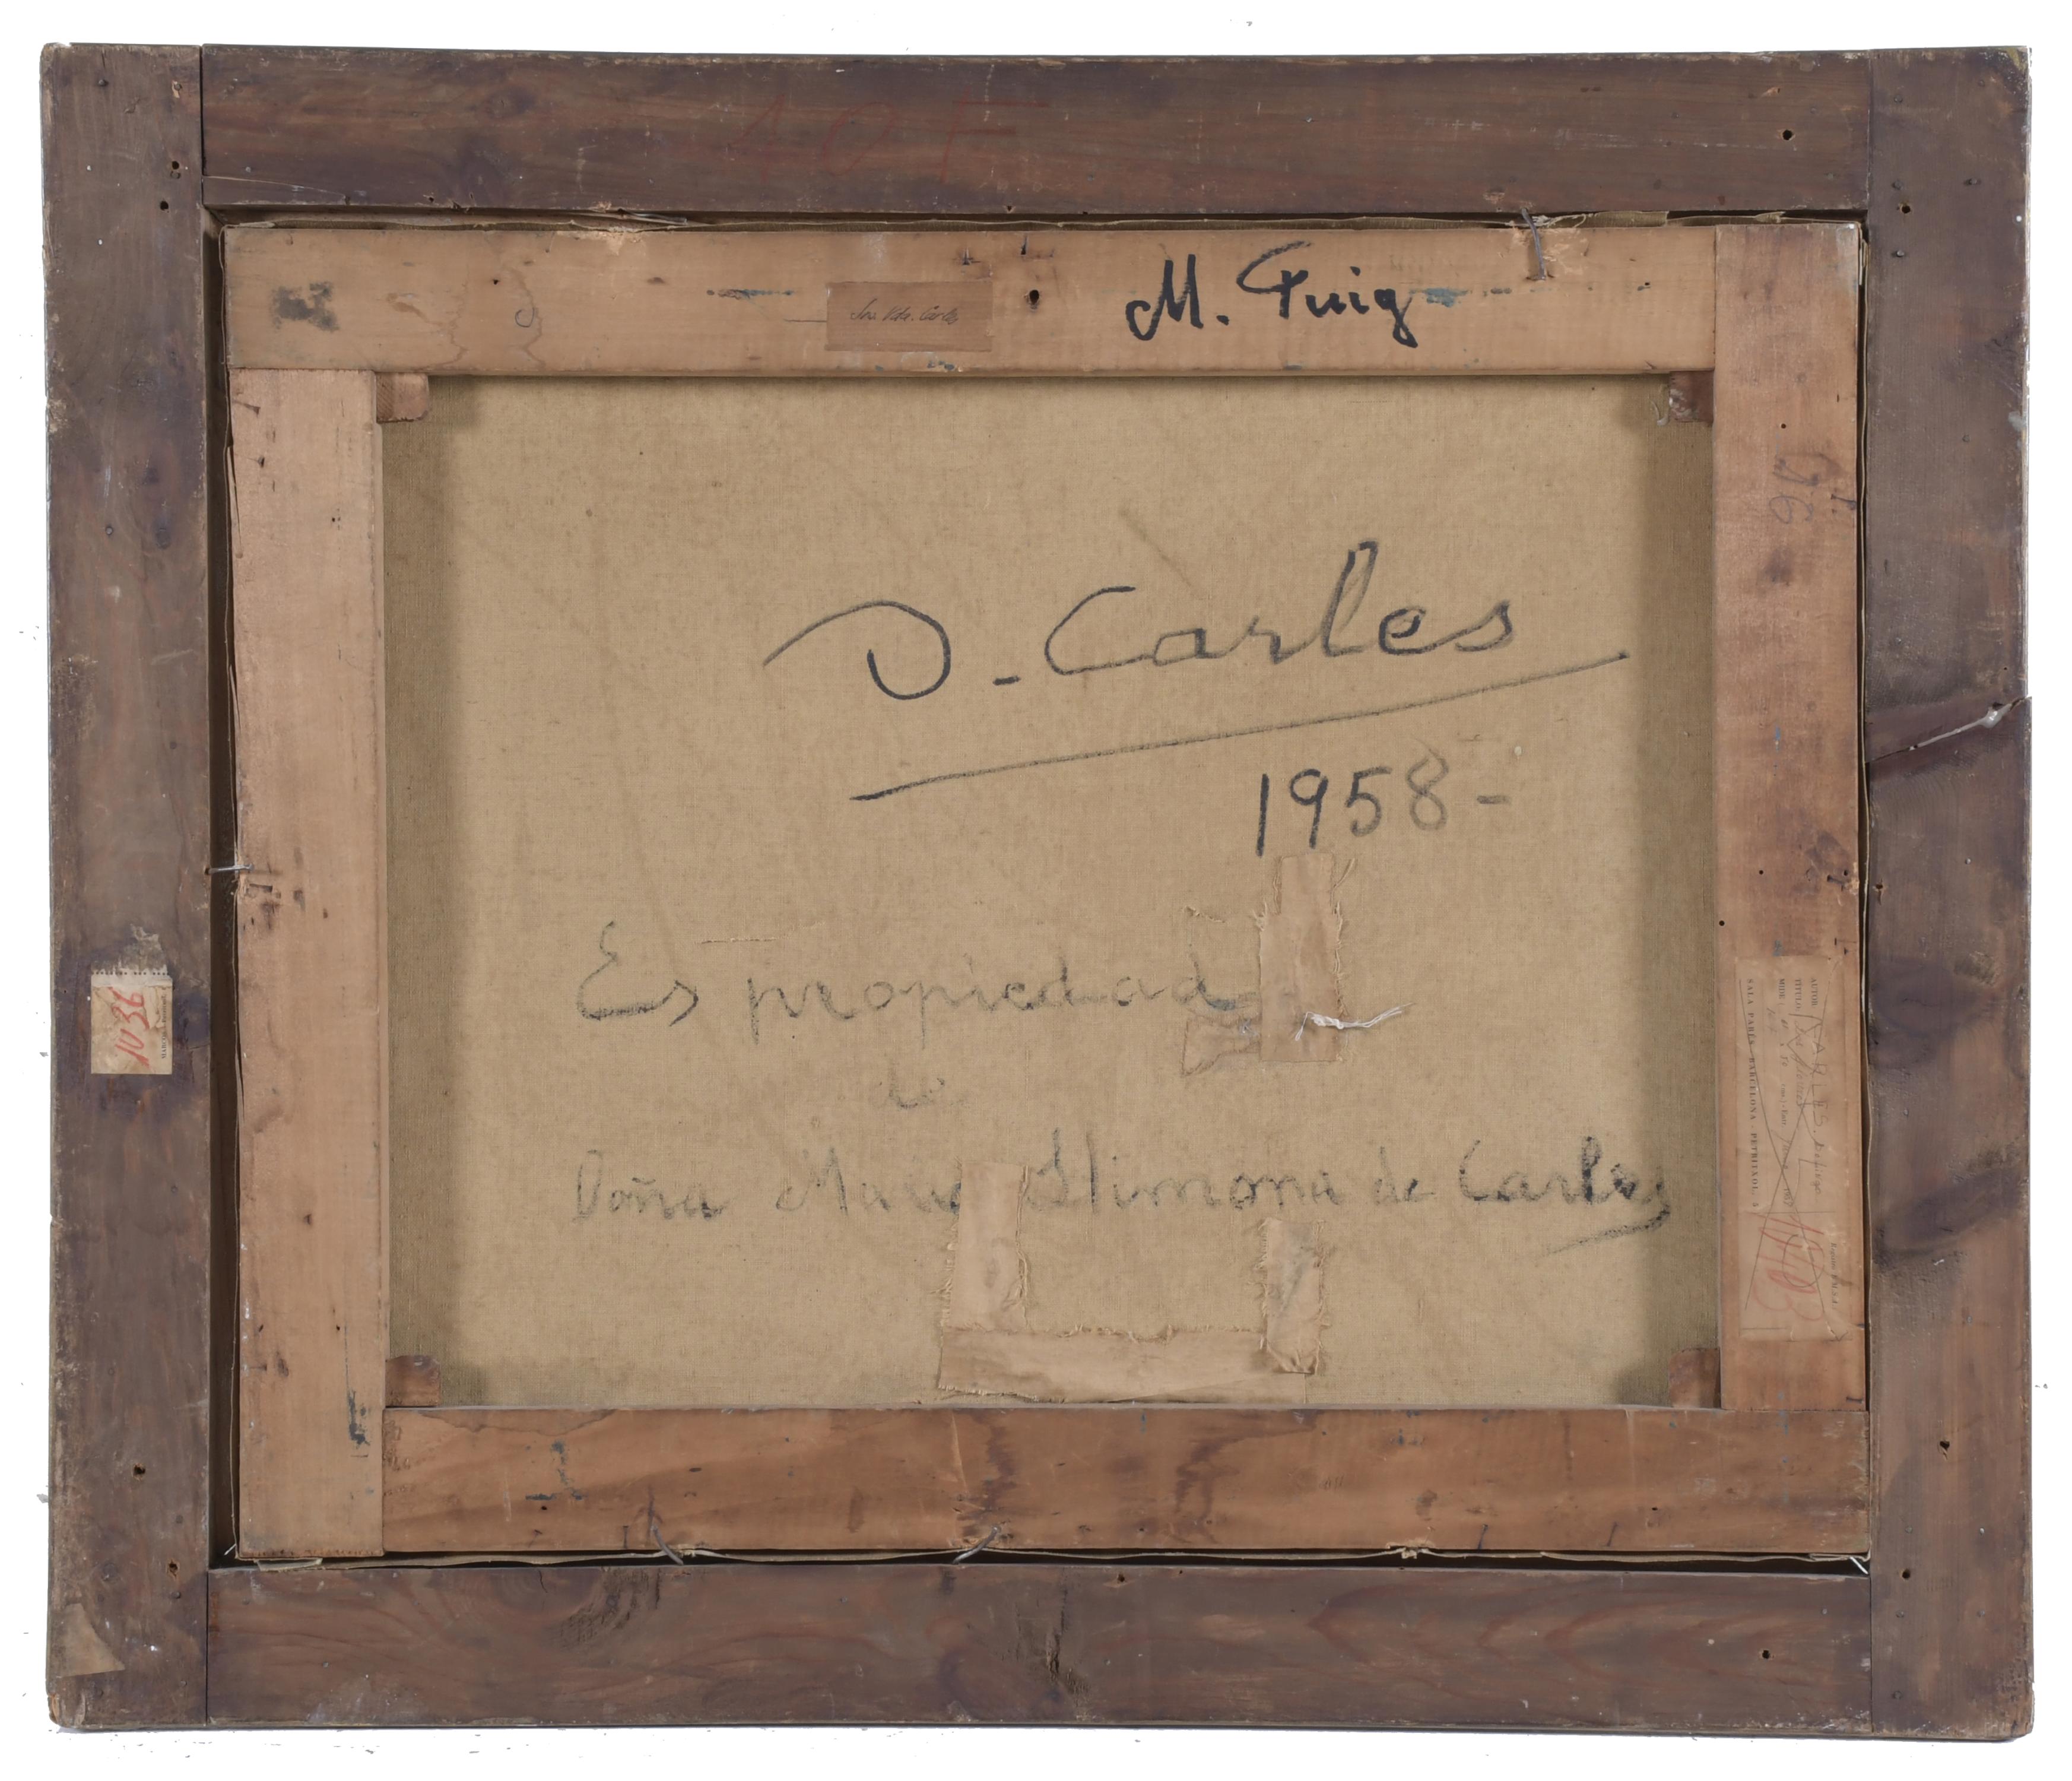 DOMINGO CARLES ROSICH (1888-1962). "LOS FLOREROS", 1958.